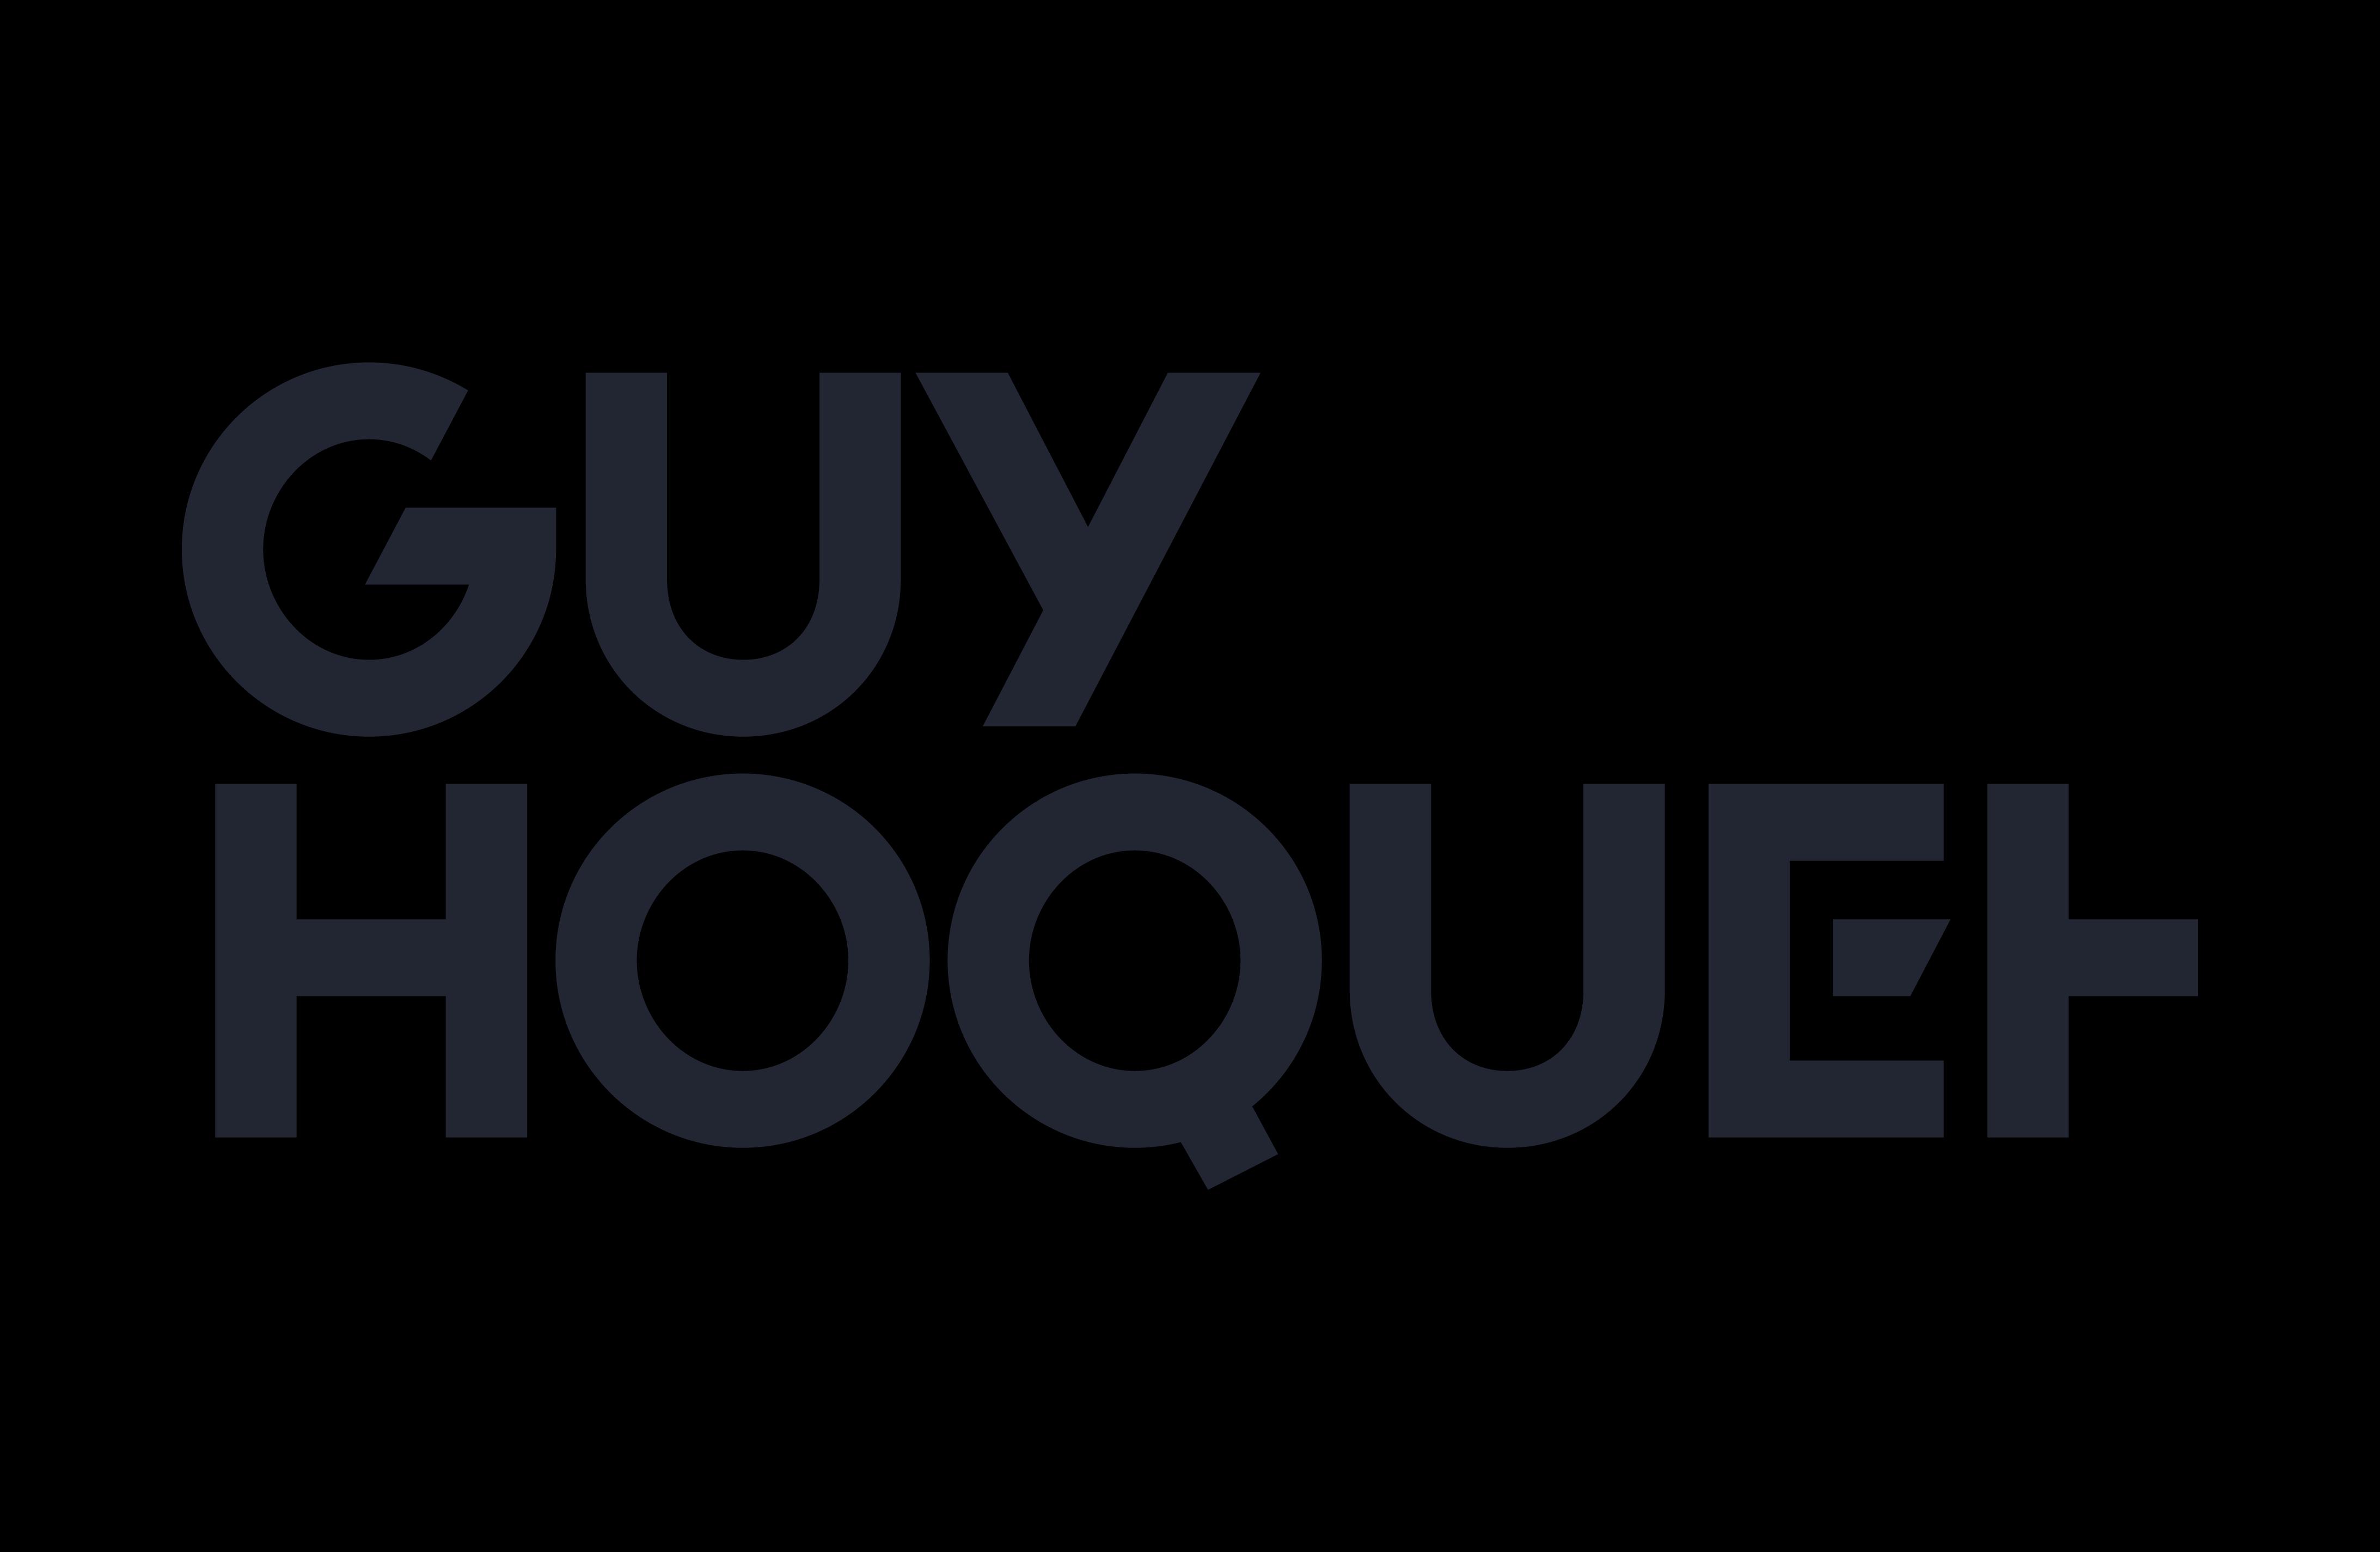 Guy Hoquet Paris